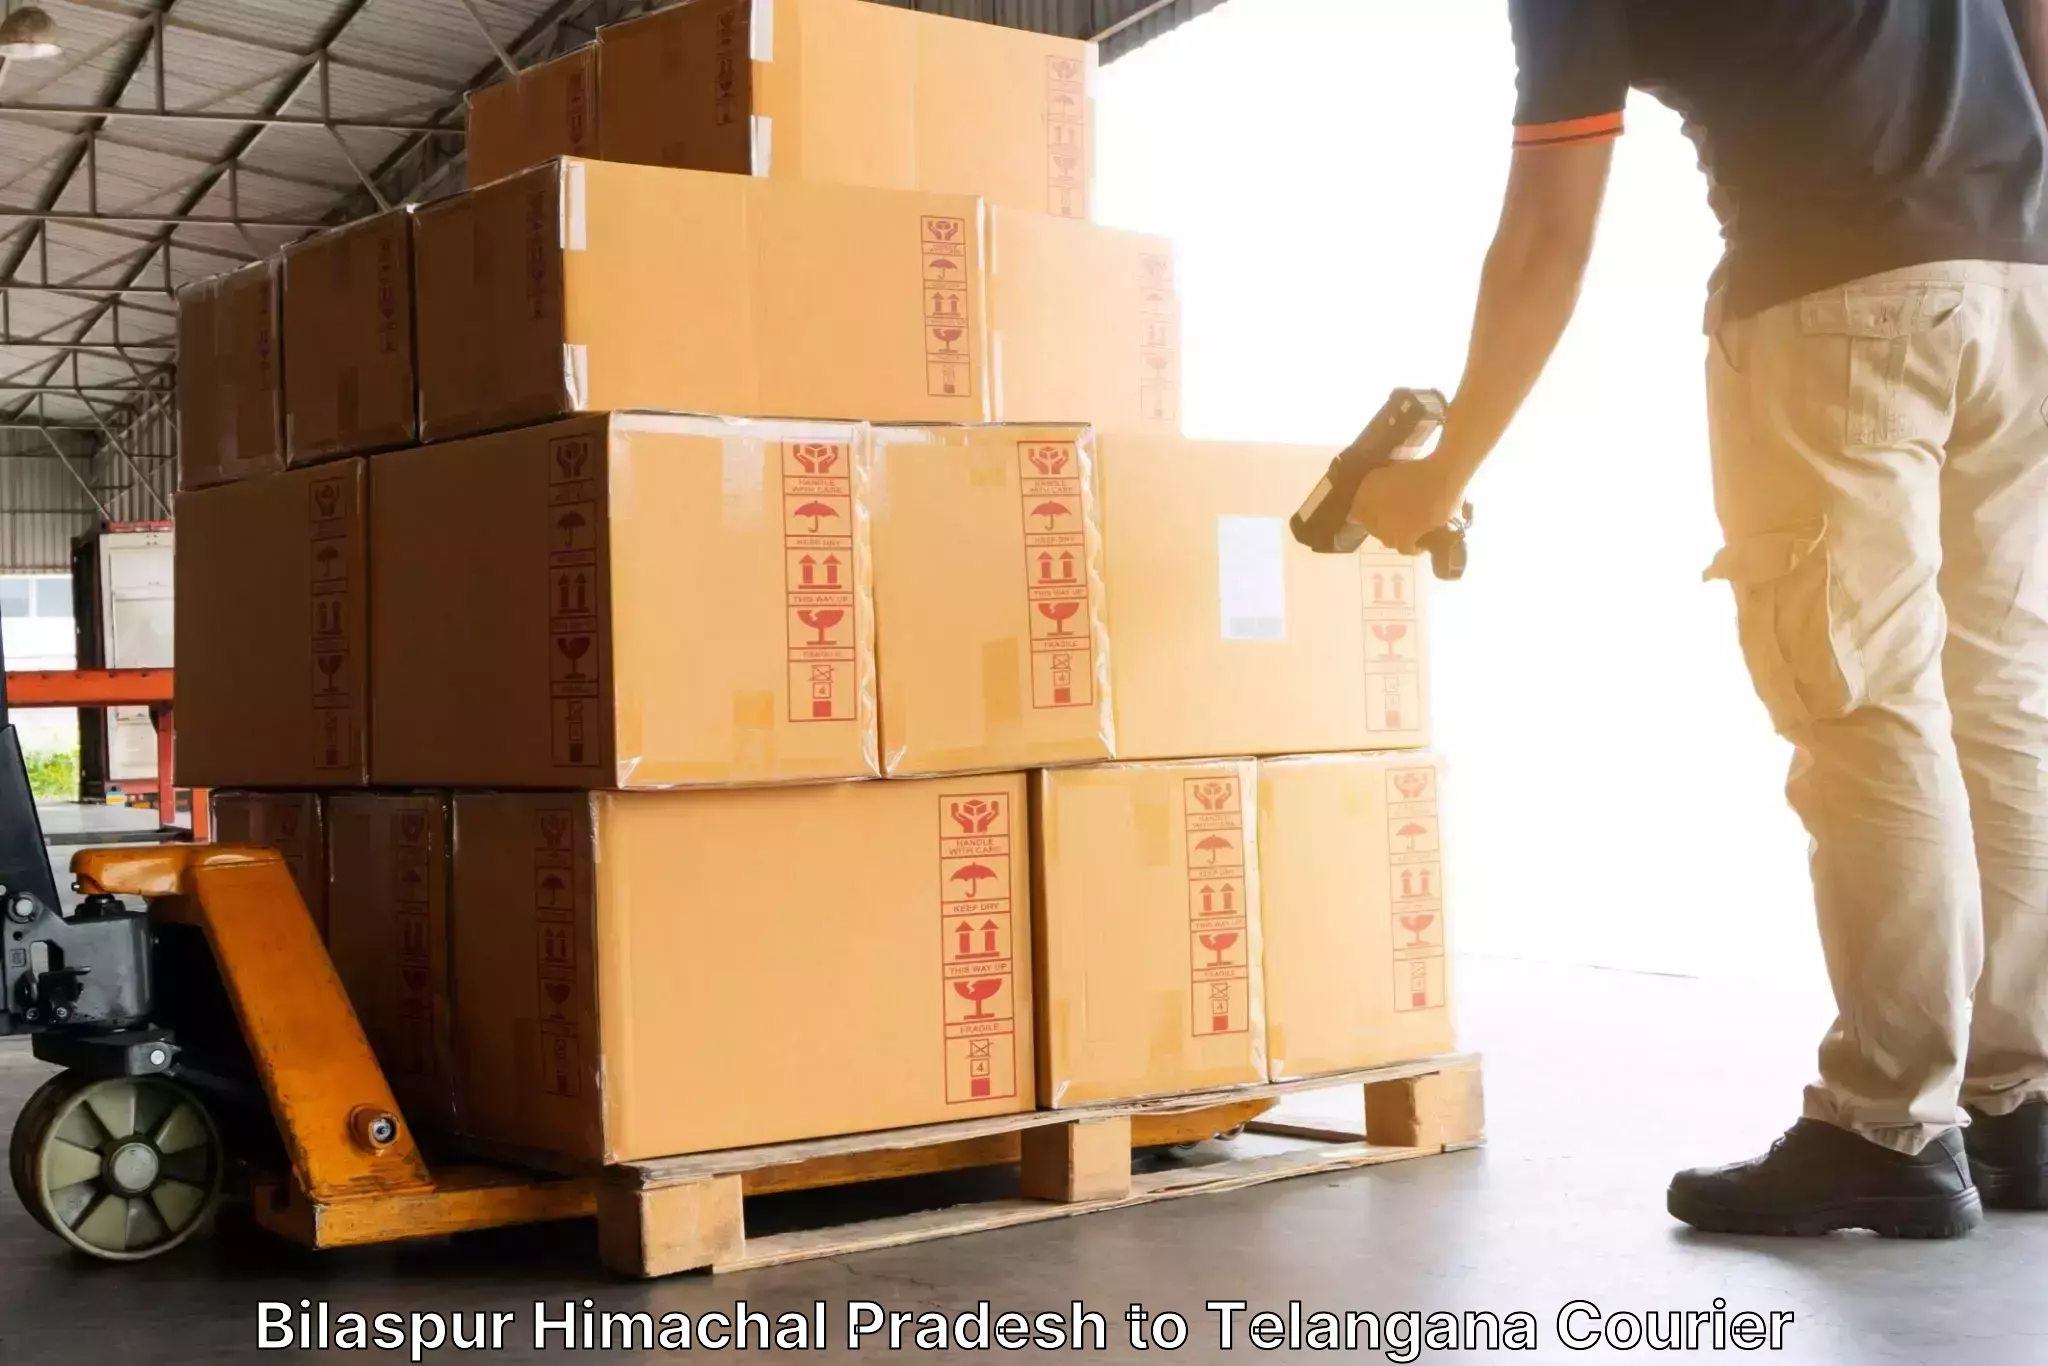 Secure freight services Bilaspur Himachal Pradesh to Chennur